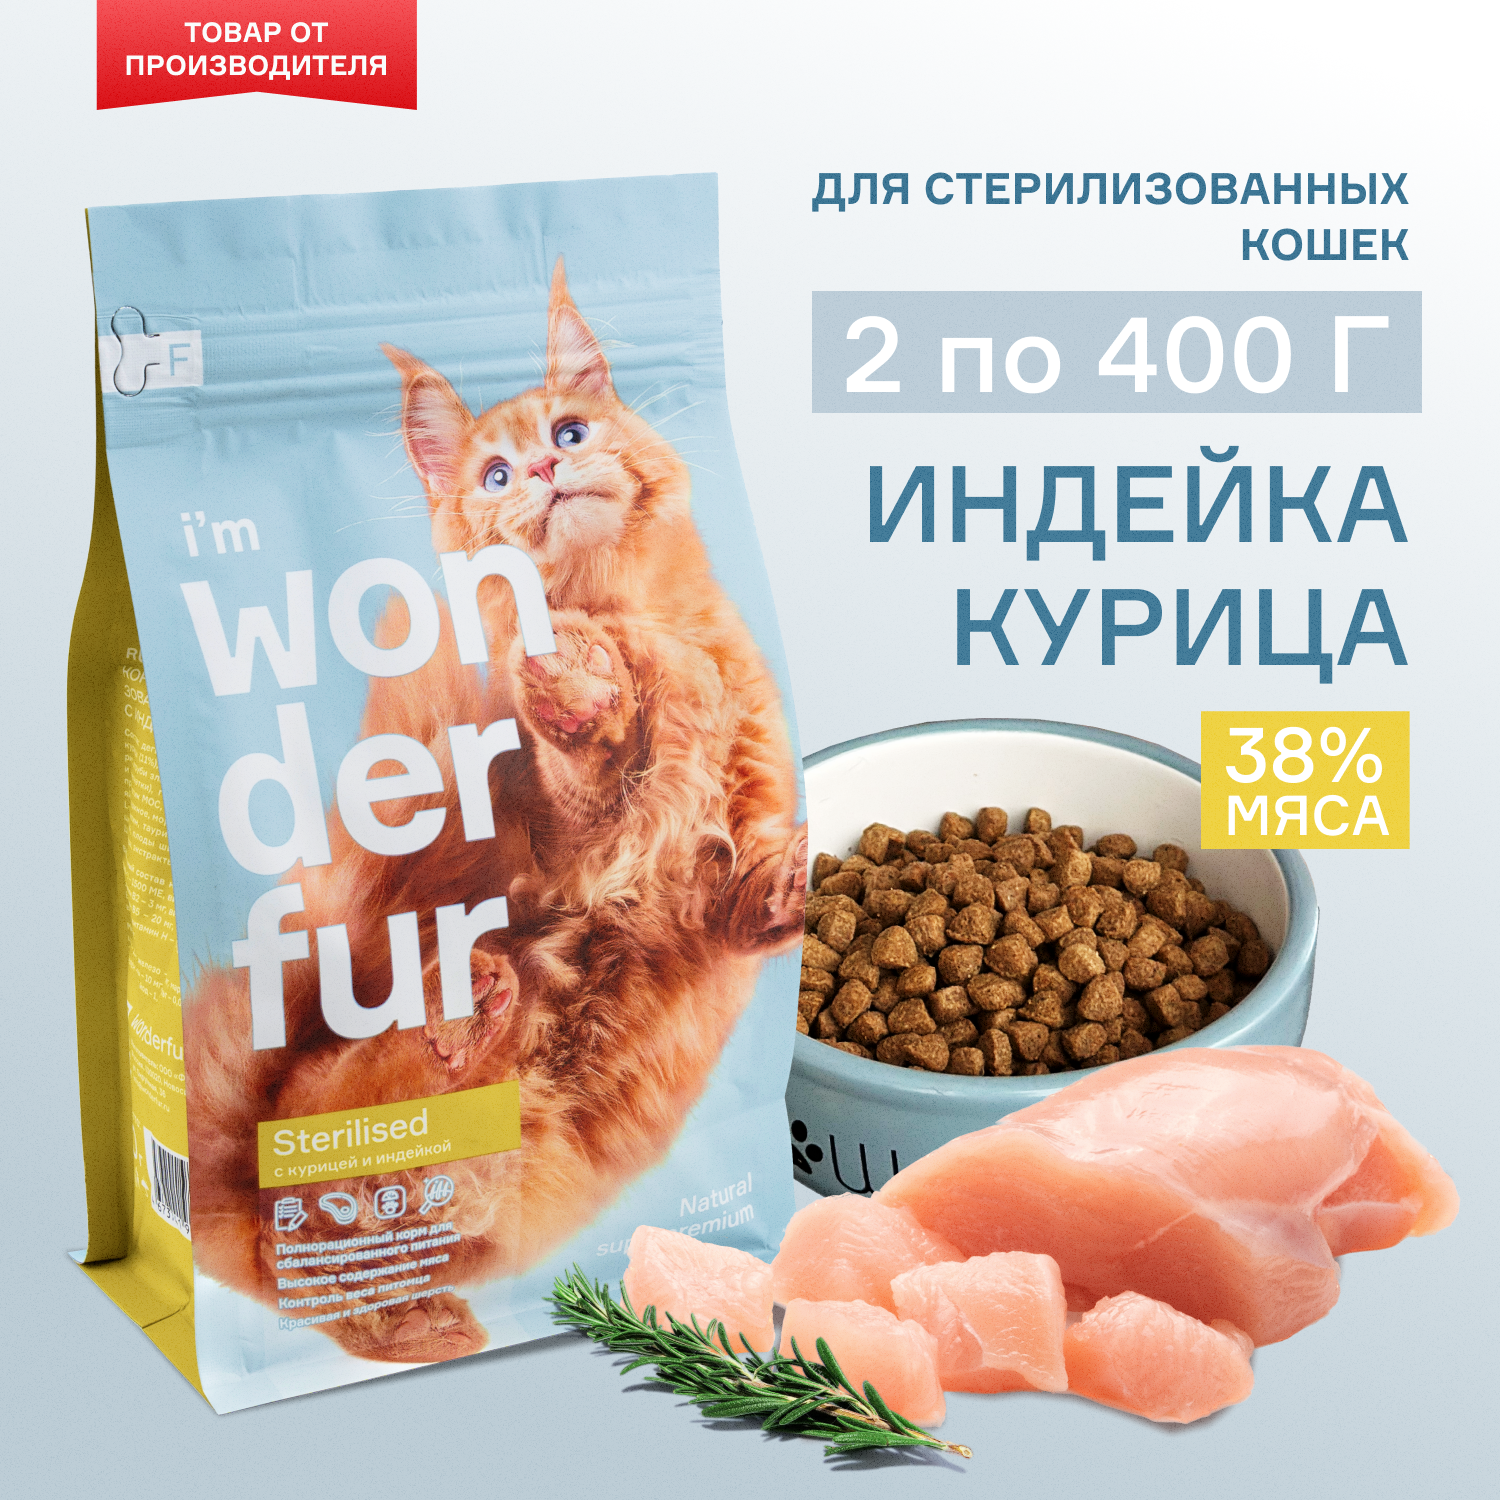 Сухой корм для стерилизованных кошек и кастрированных котов WONDERFUR, индейка, курица 400гр - 2 шт